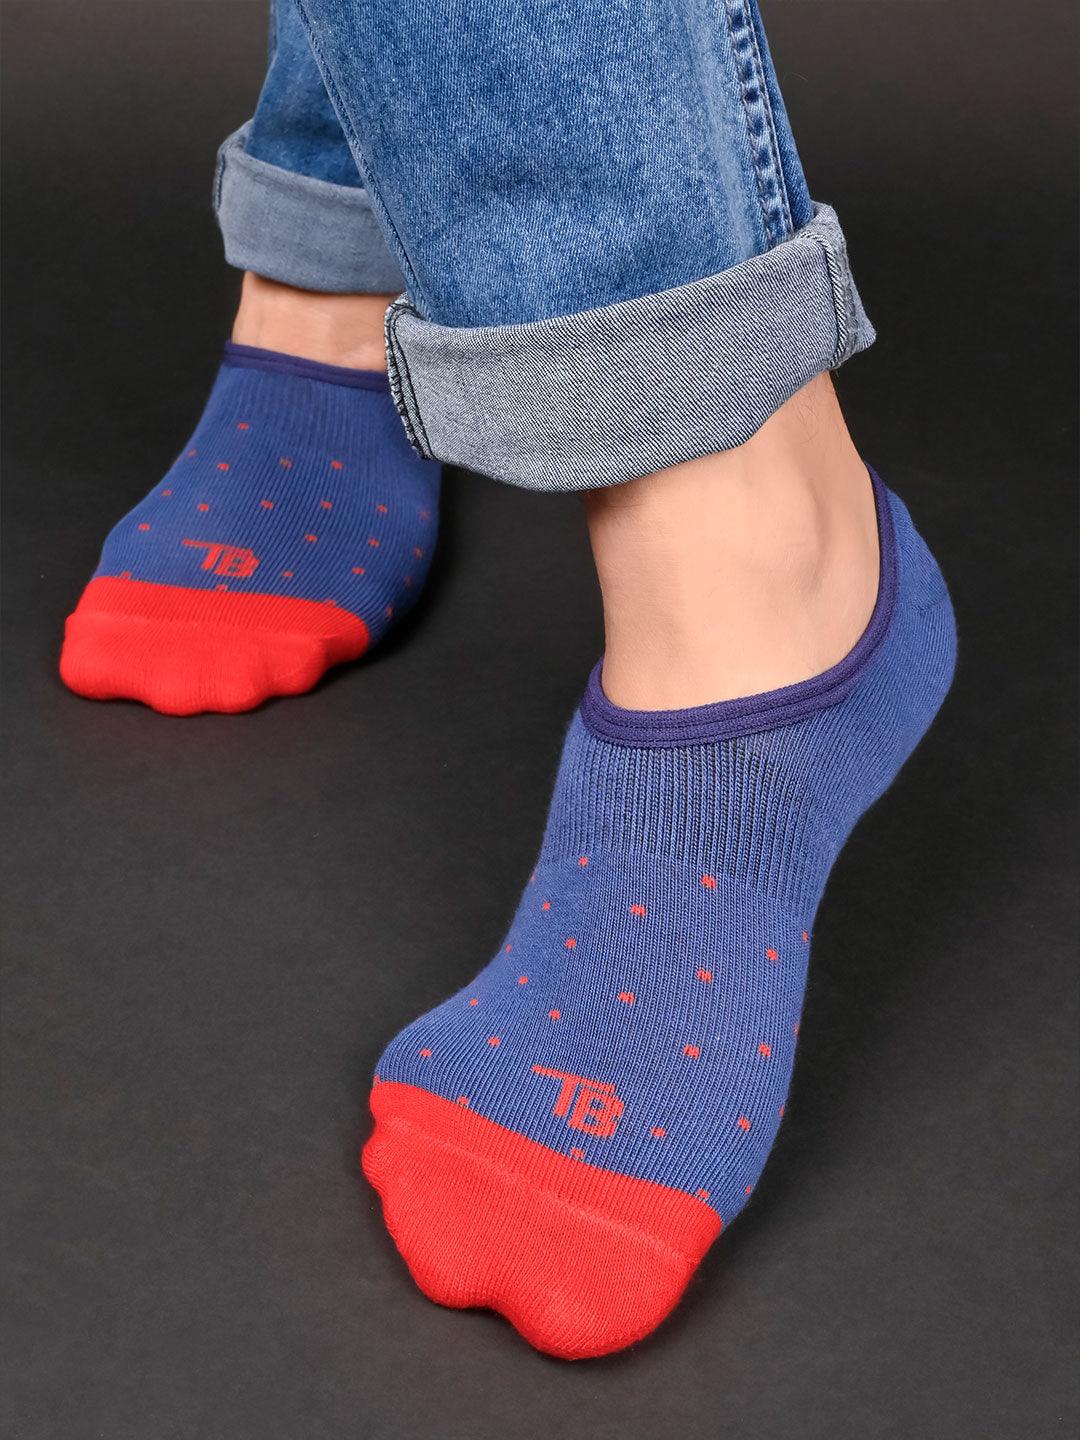 socks for men 